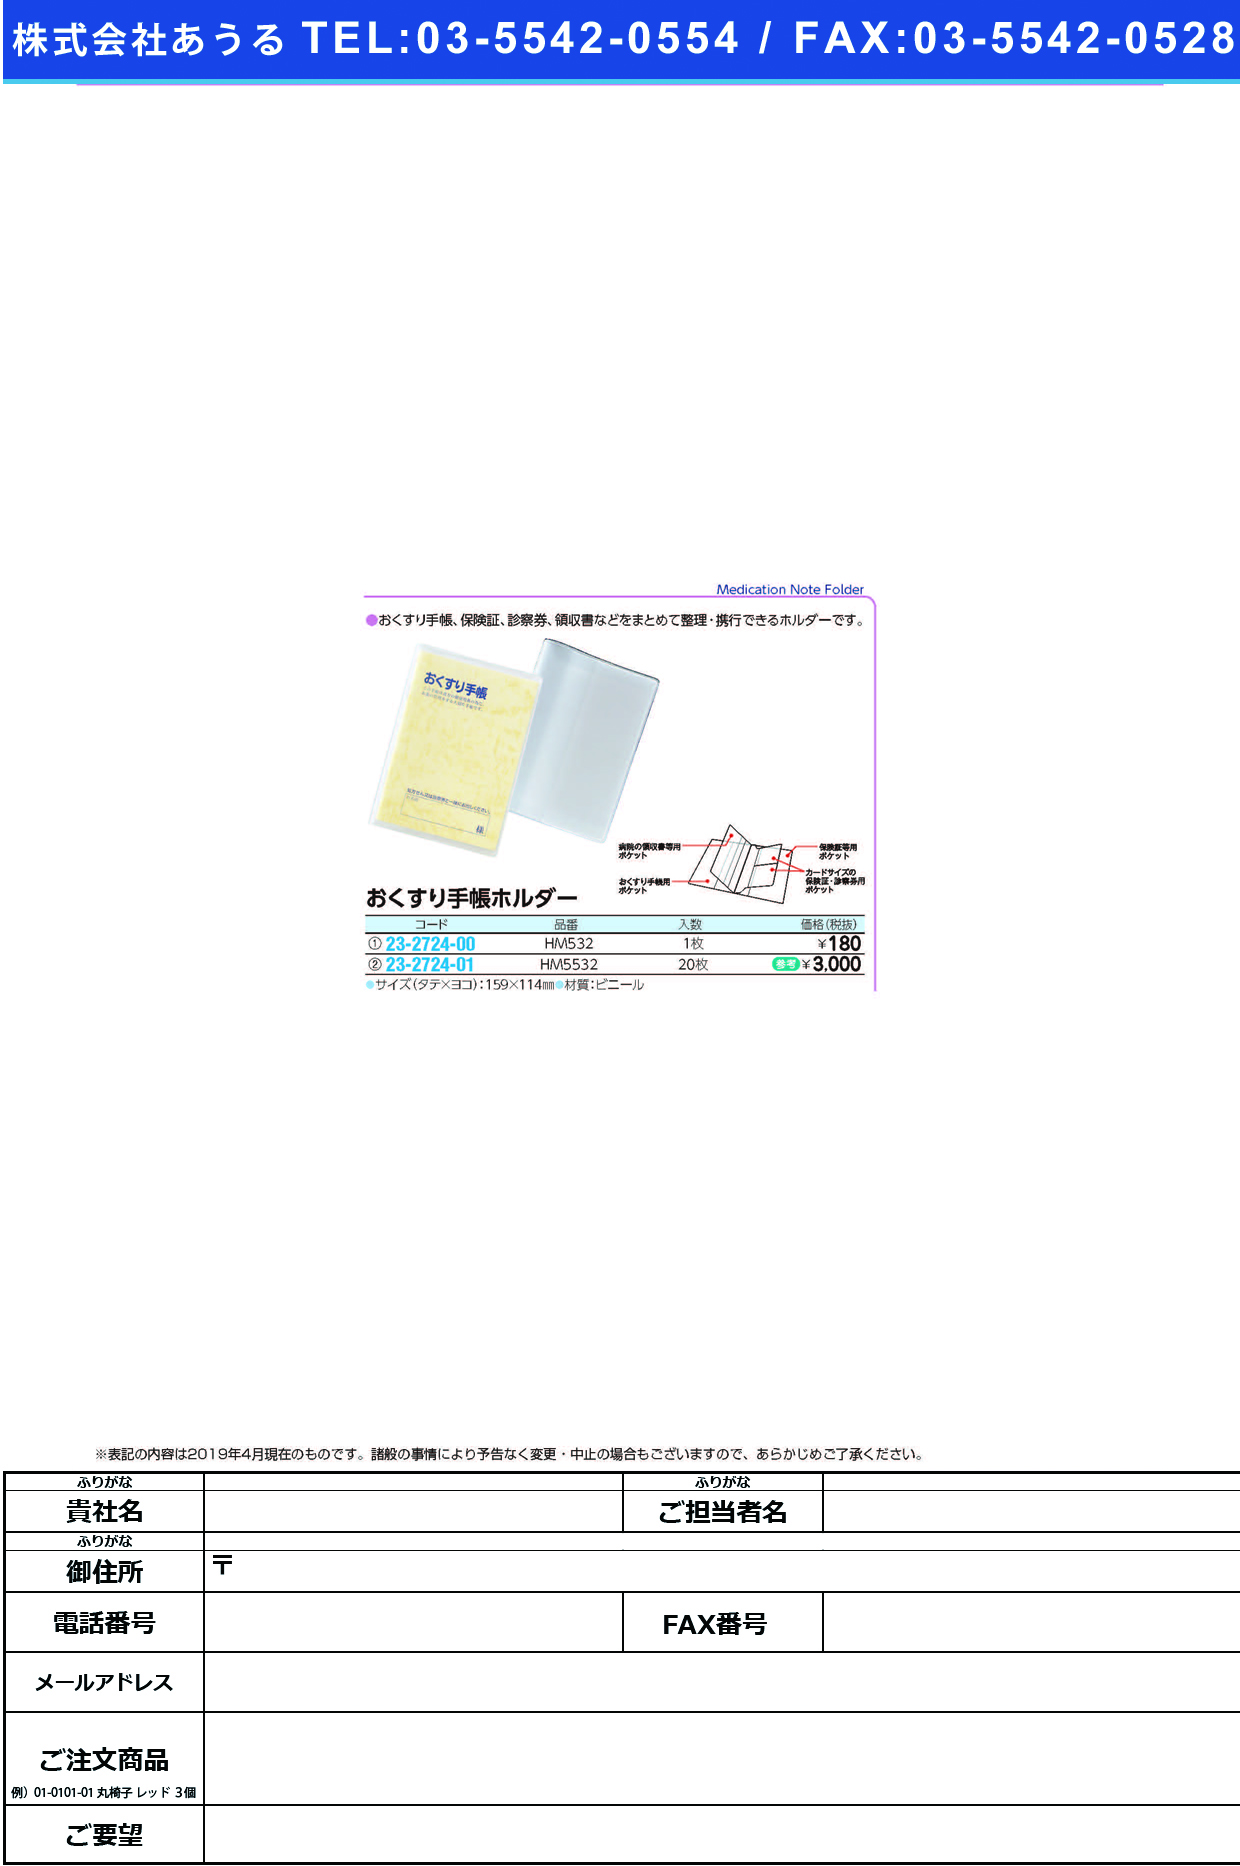 (23-2724-00)おくすり手帳ホルダー HM532(1ﾏｲ) ｵｸｽﾘﾃﾁｮｳﾎﾙﾀﾞｰ(ＬＩＨＩＴＬＡＢ．)【1枚単位】【2019年カタログ商品】